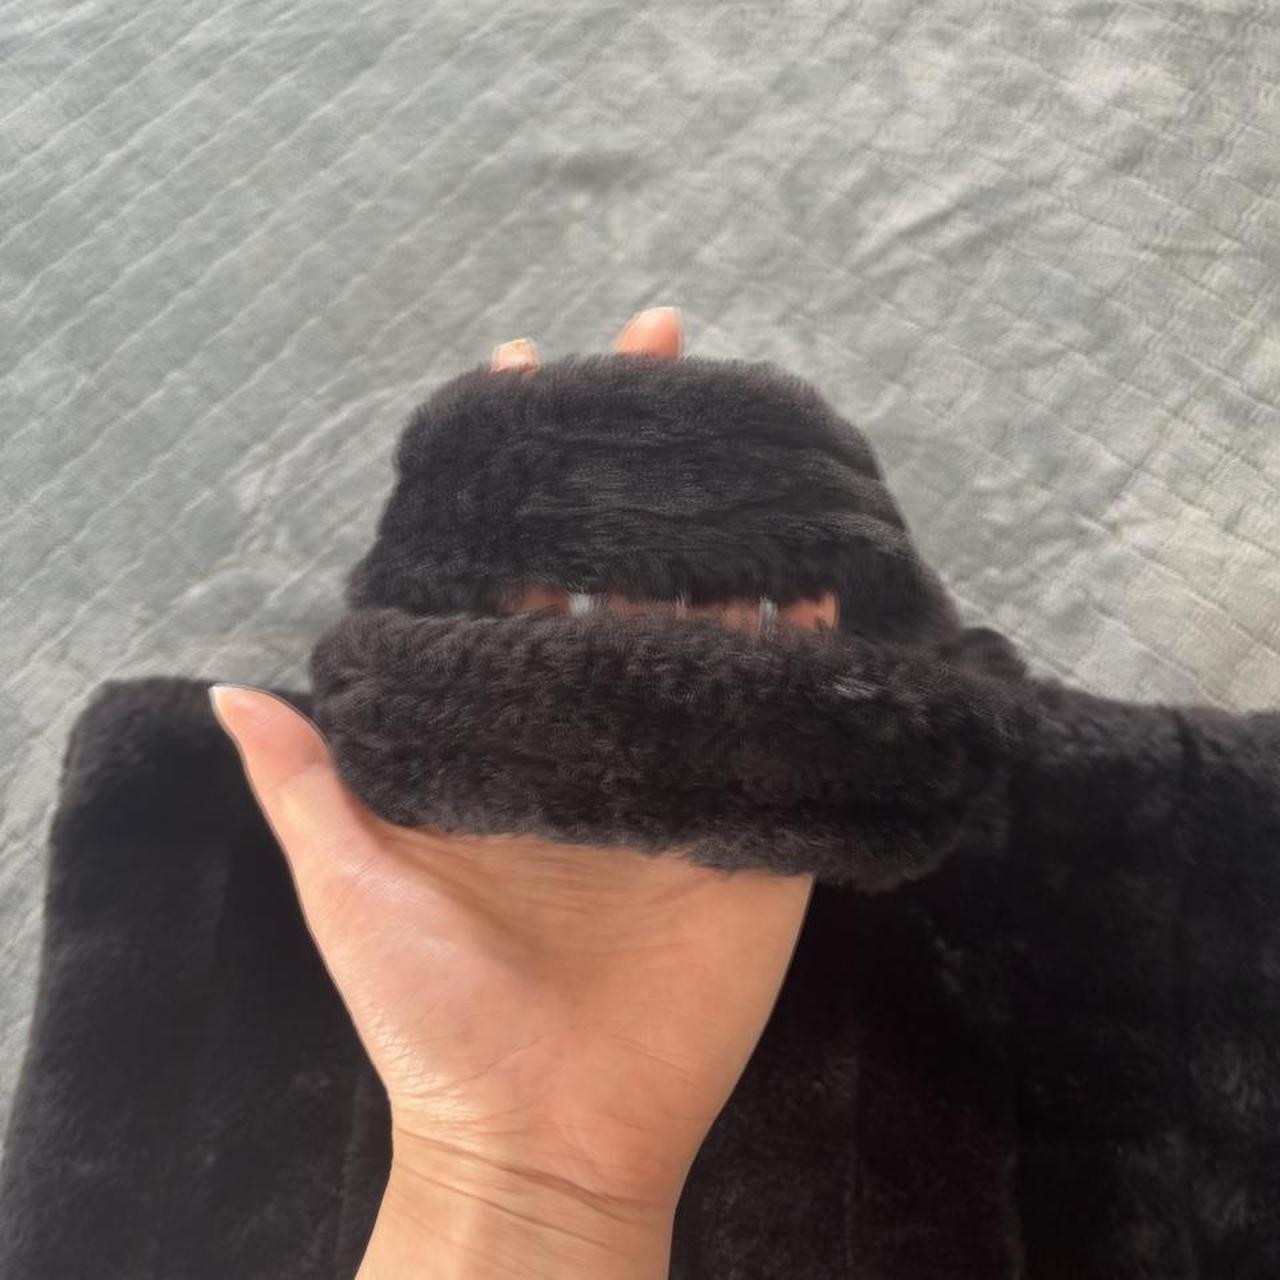 Victoria’s Secret fluffy teddy black tote bag